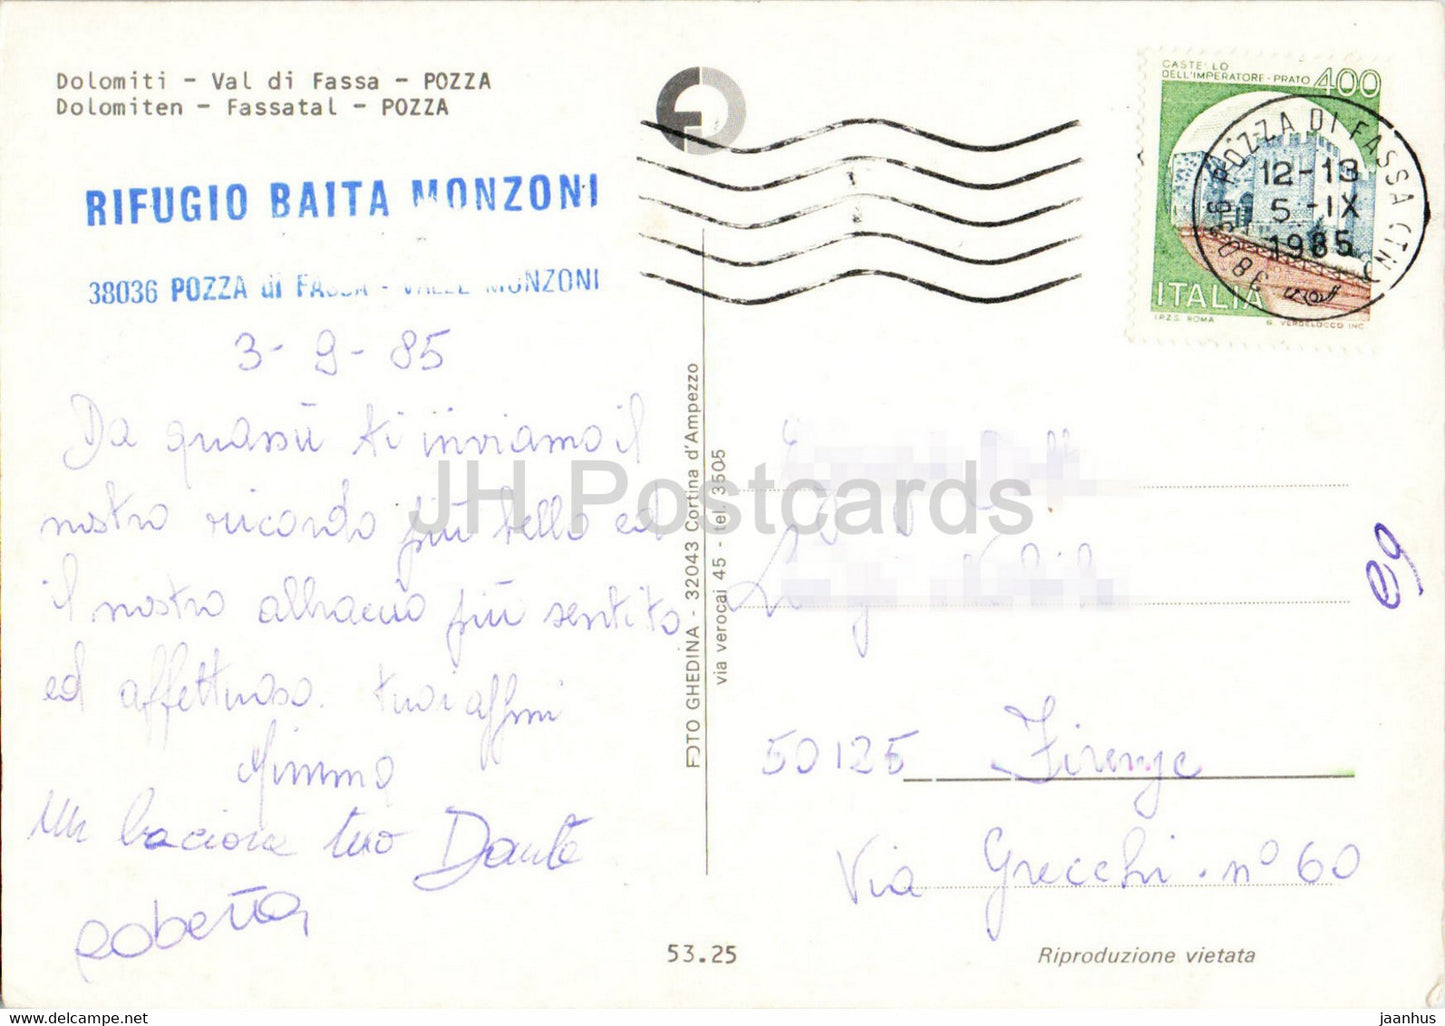 Pozza - Val di Fassa - Dolomiti - voiture - 1985 - Italie - occasion